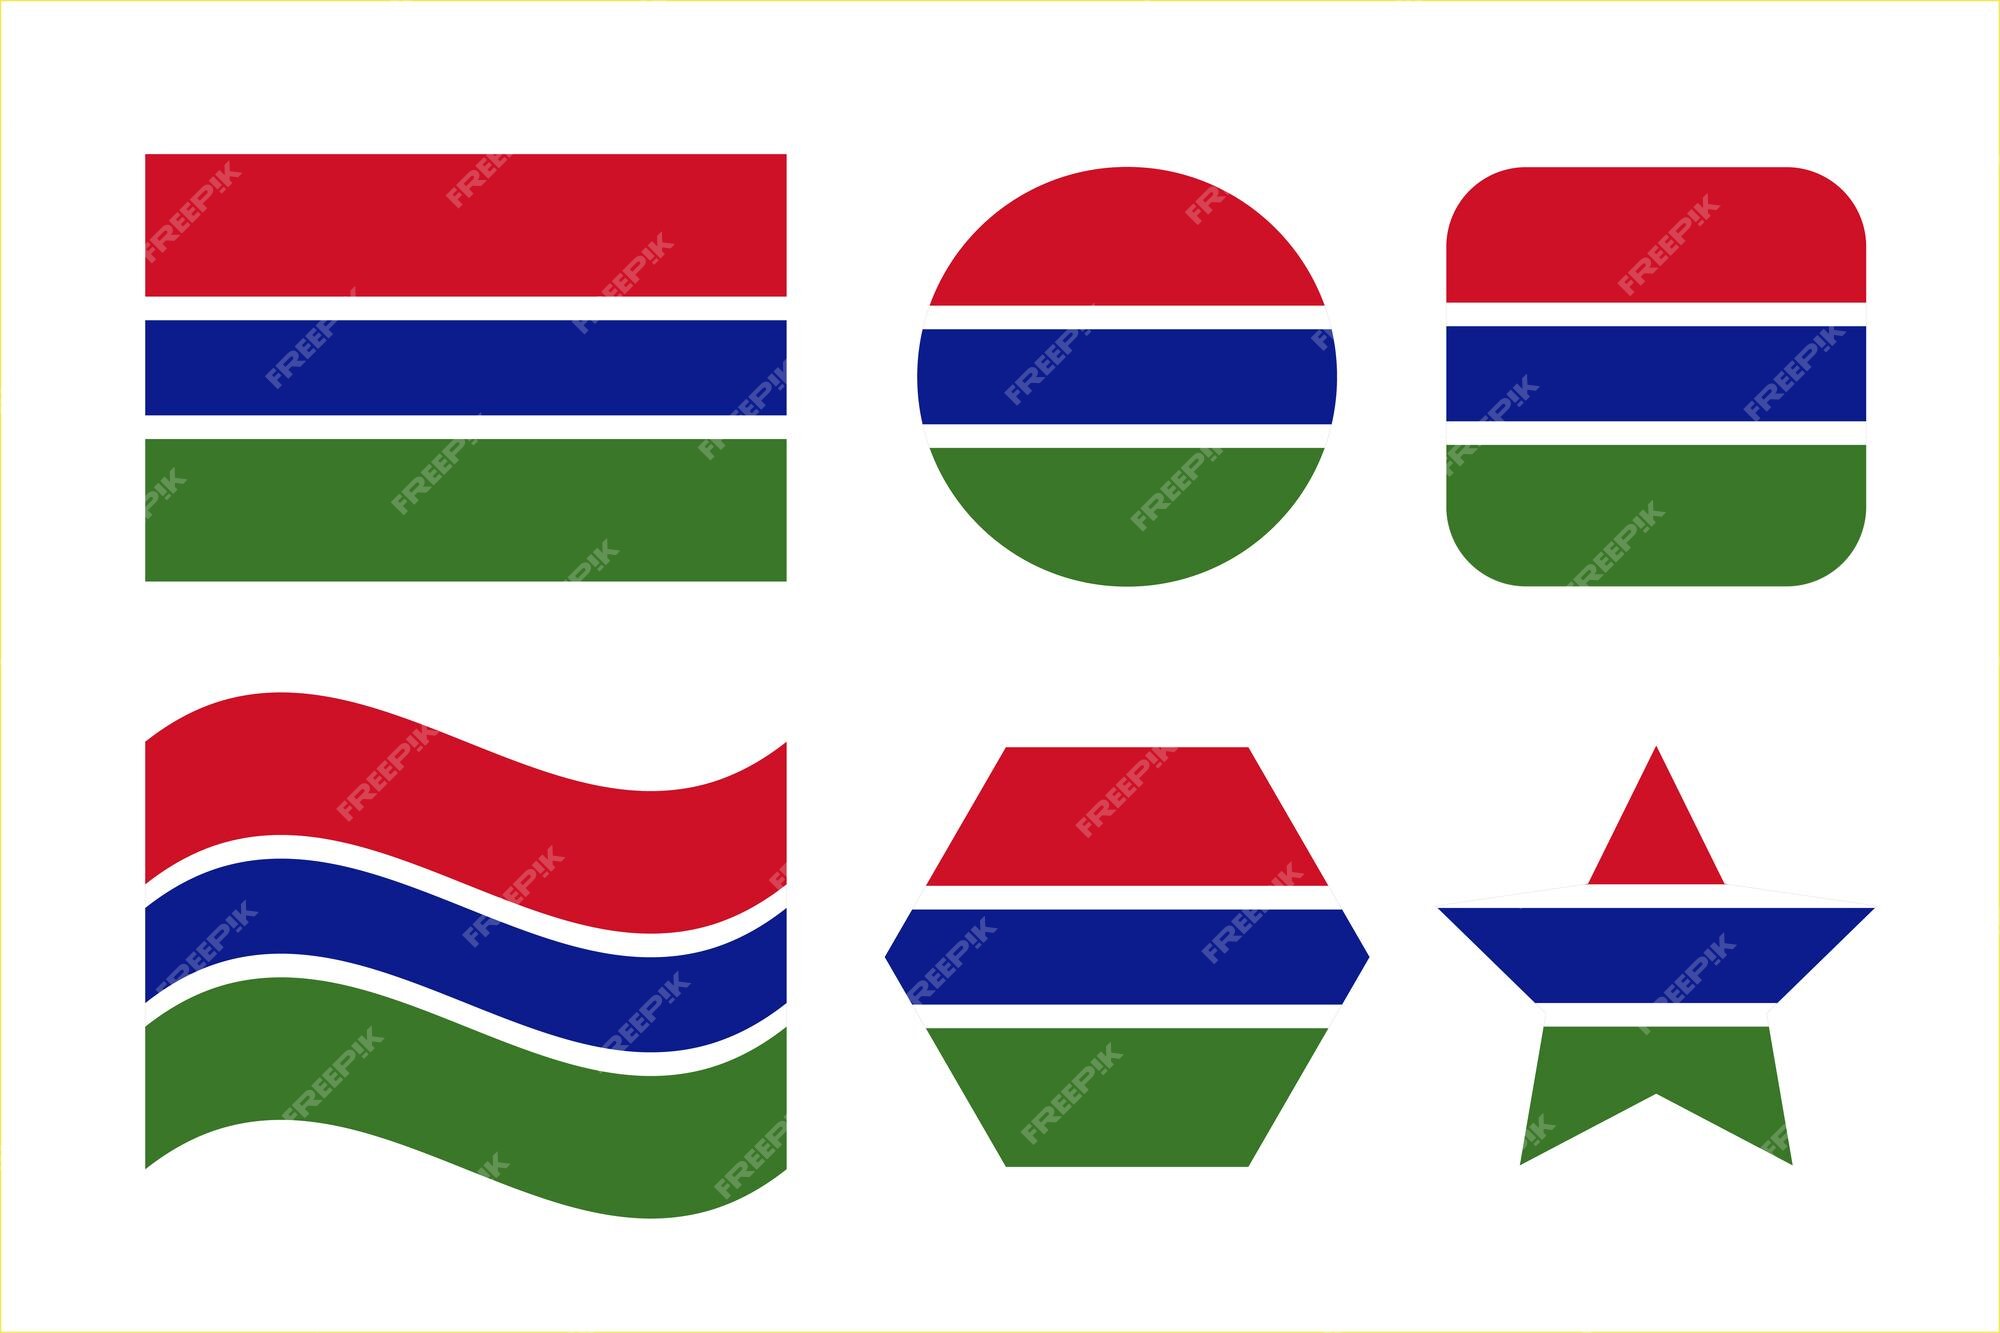 무료로 다운로드 가능한 잠비아 국기 벡터 & 일러스트 | Freepik